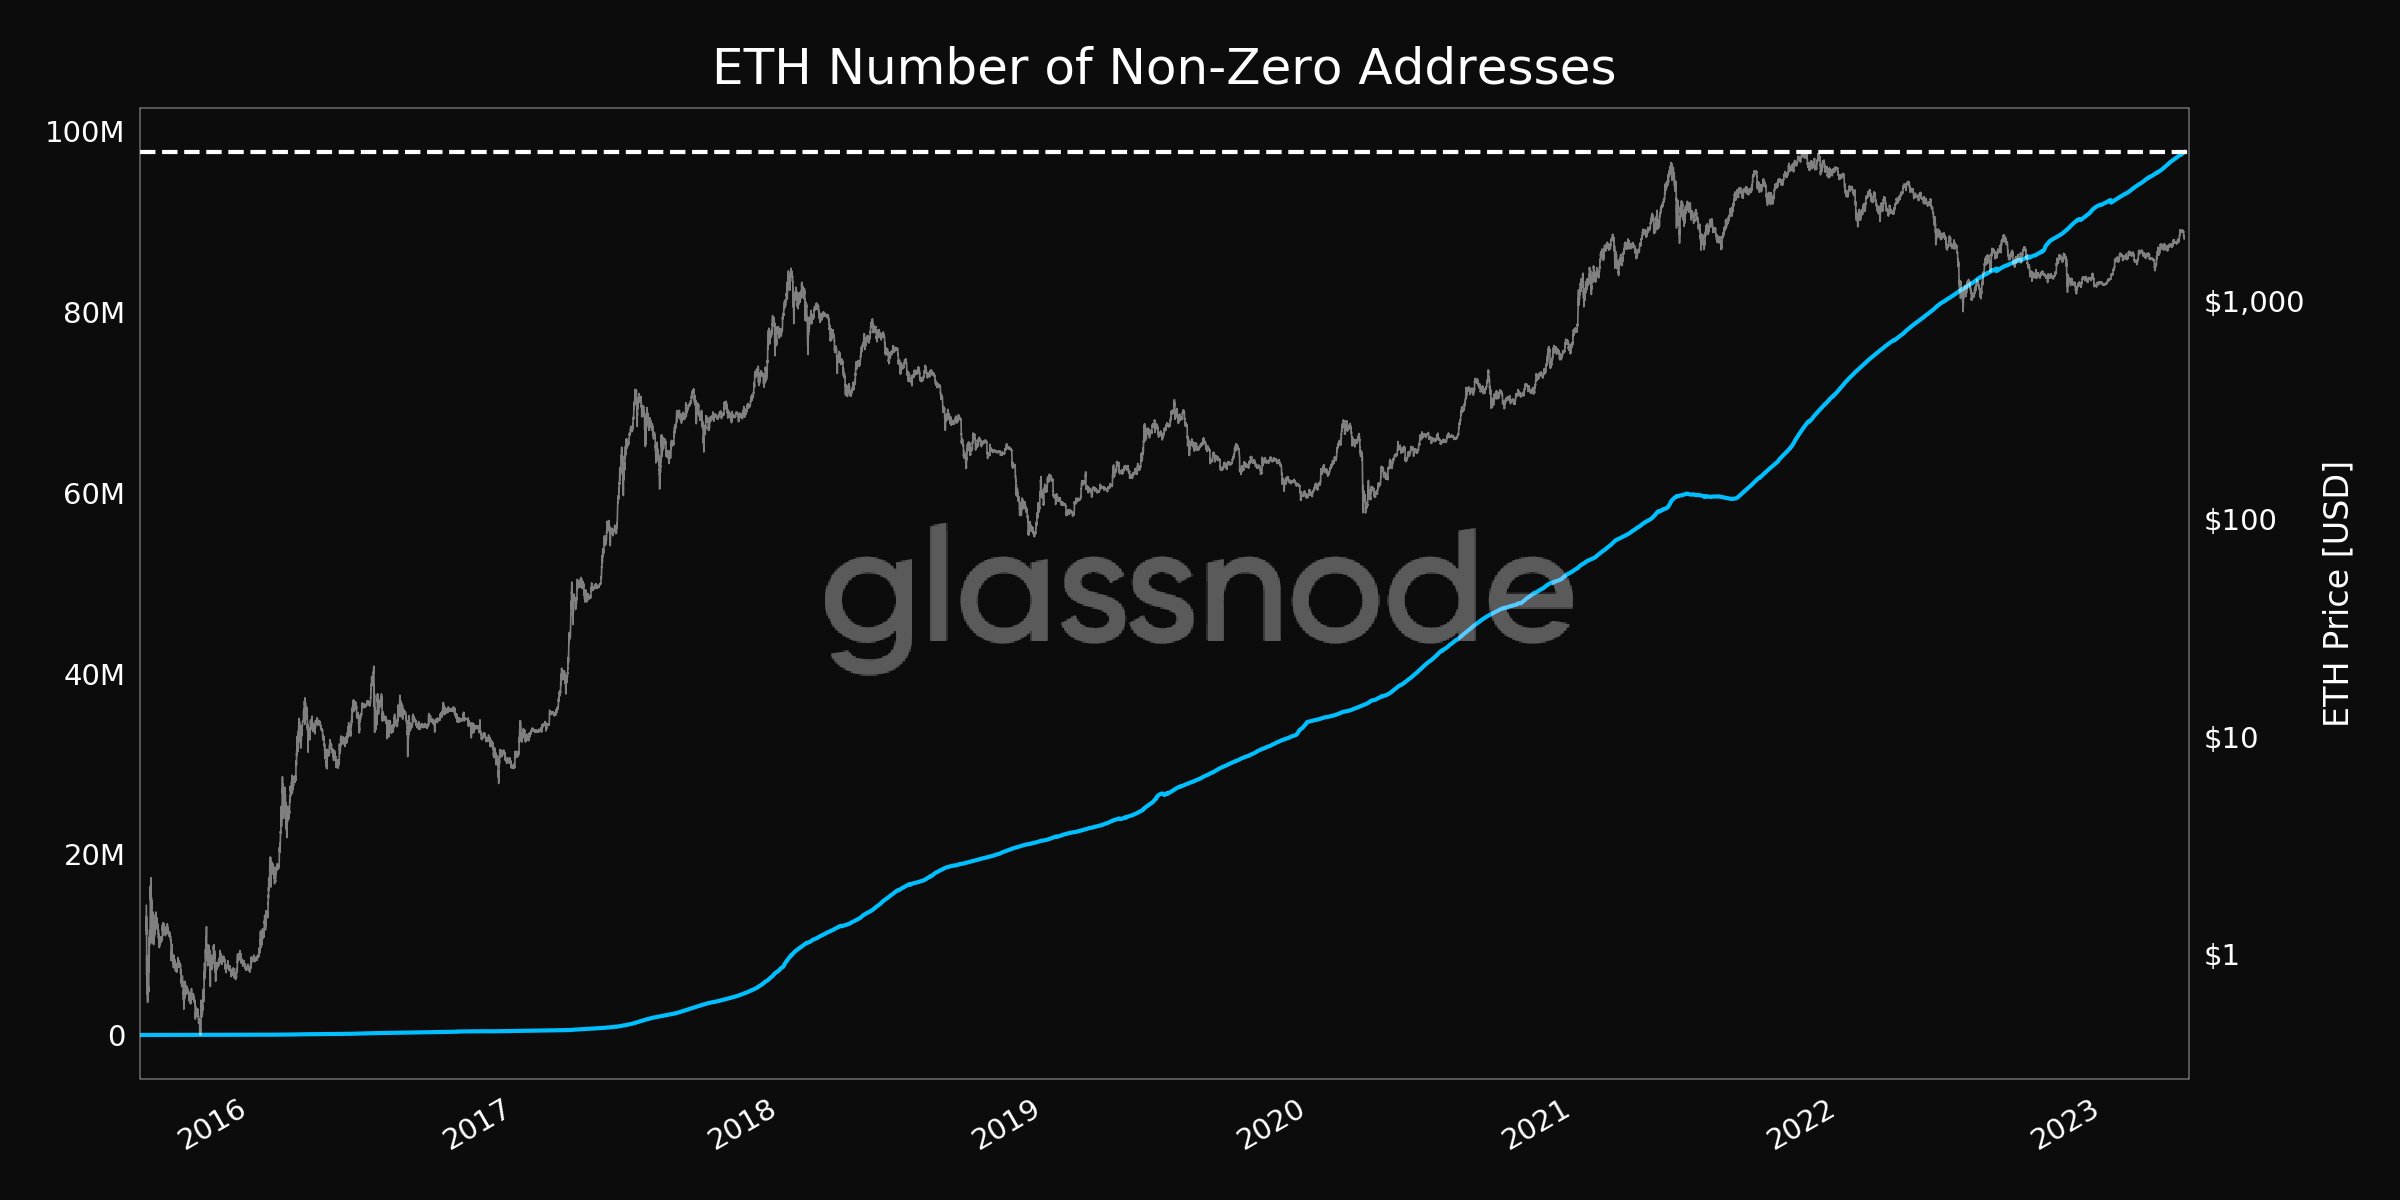 Non-Zero ETH Addresses Reach 97.6 Million